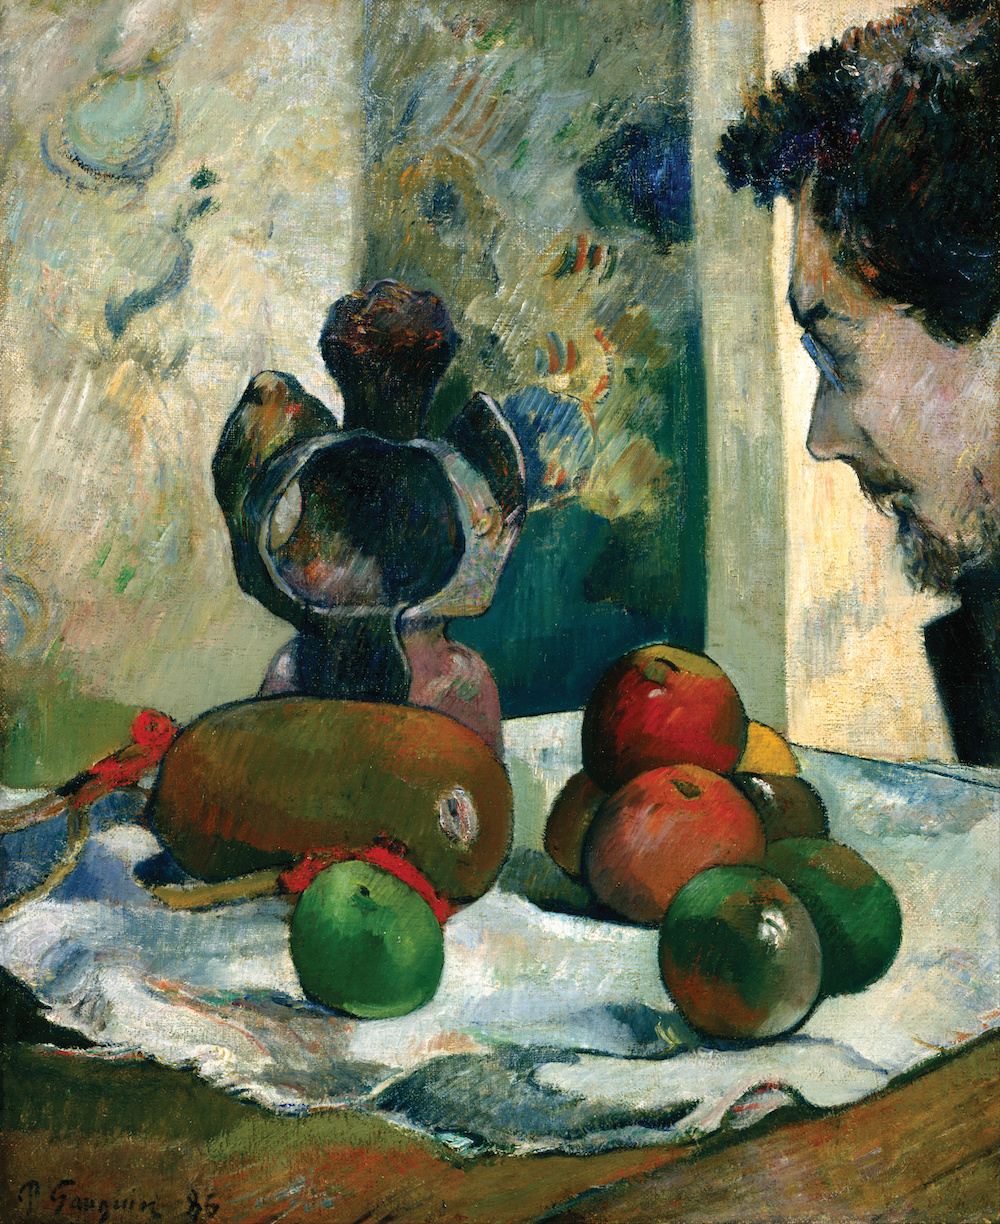 靜物與拉瓦爾側面輪廓 by Paul Gauguin - 1886 - 46 x 38 cm 